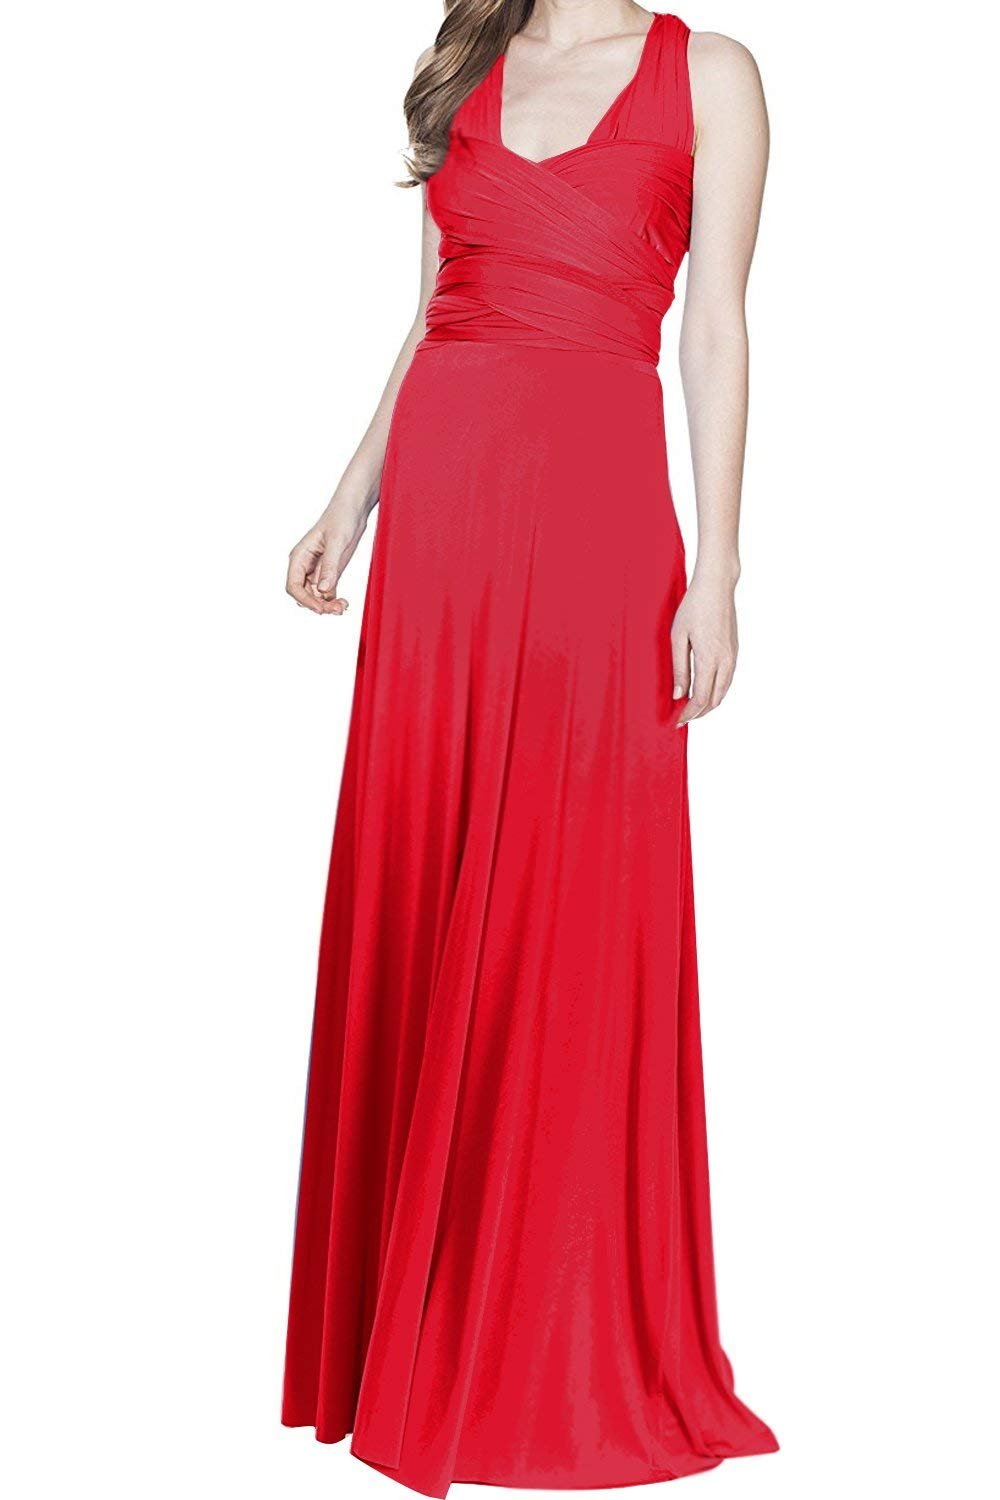 Damen Frauen Elgant V-Ausschnitt Brautjungfernkleid Infinity Abendkleid Geknotetem Multiway Rückenfrei Neckholder Cocktailkleid Rot XL